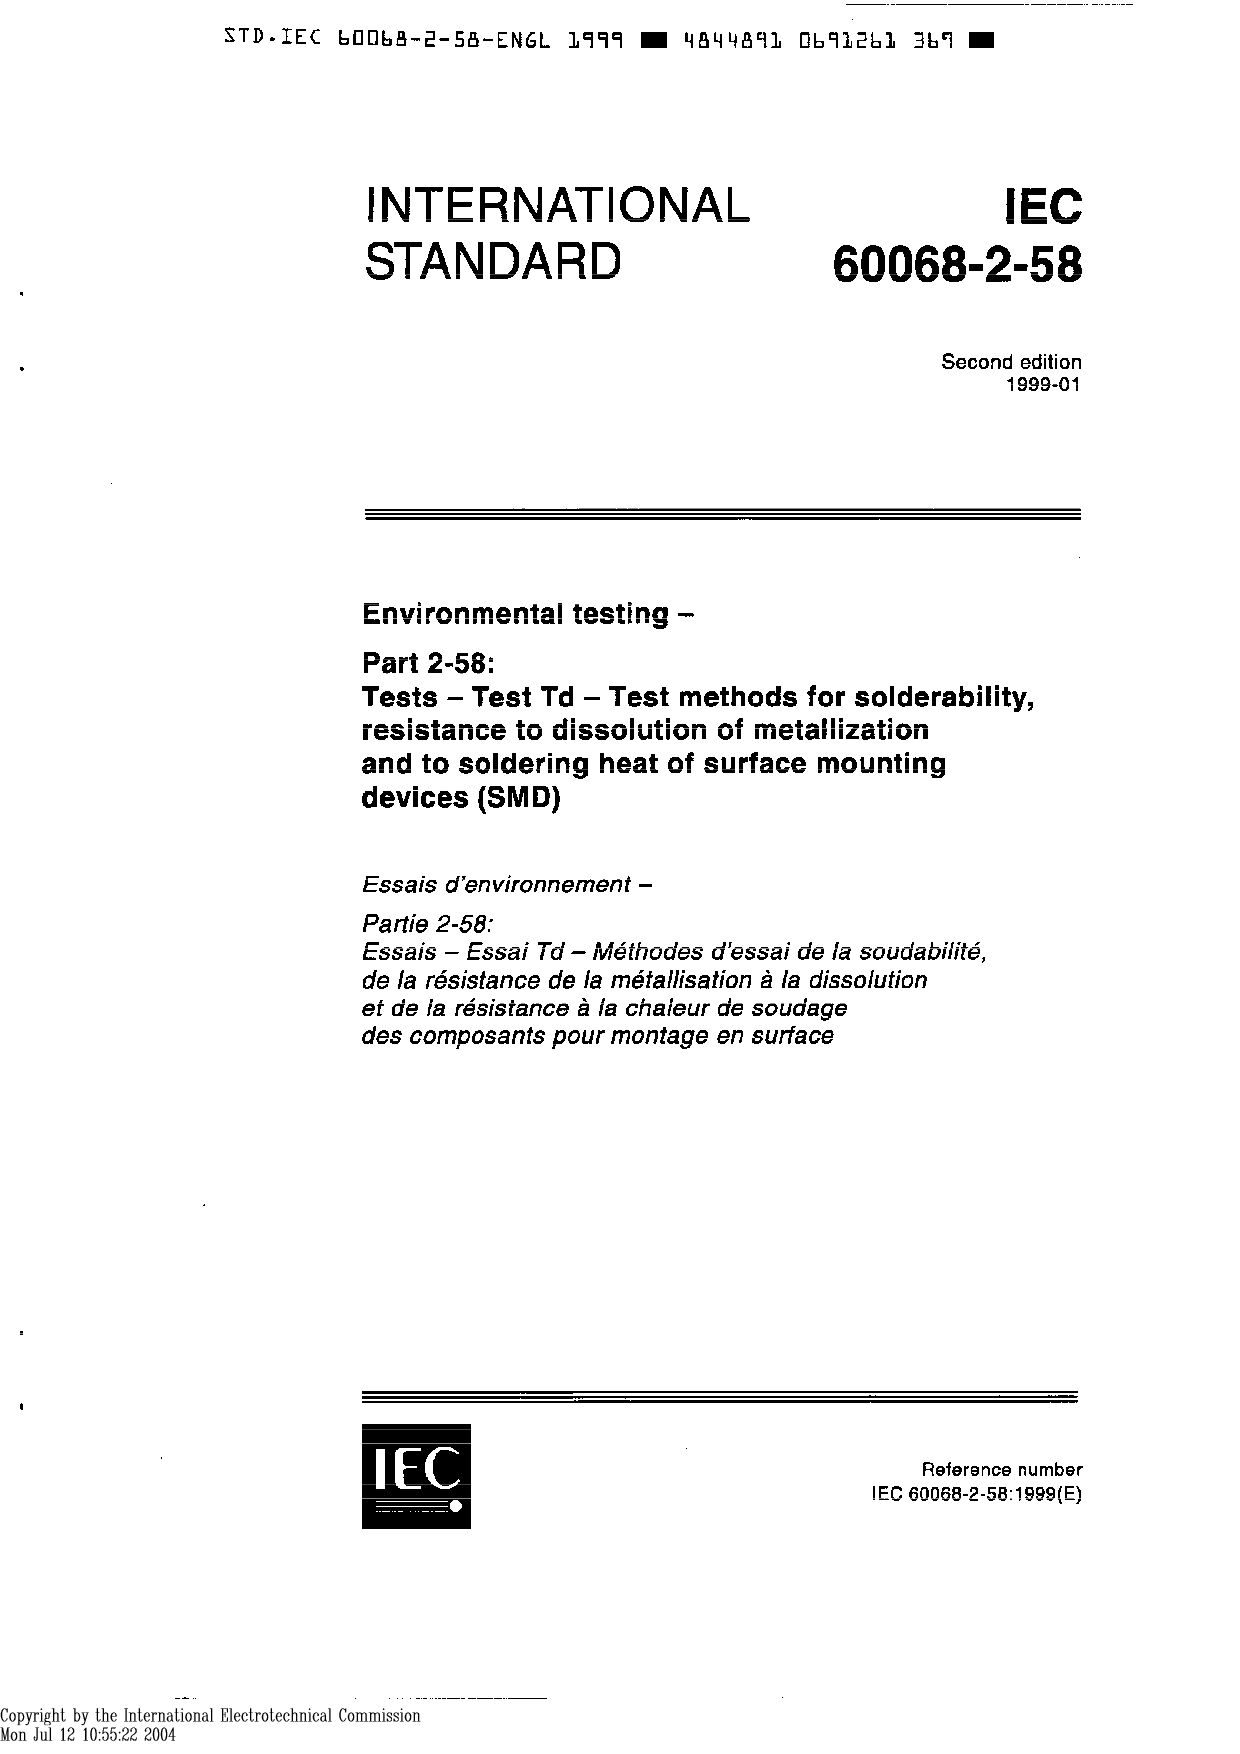 IEC 60068-2-58-1999